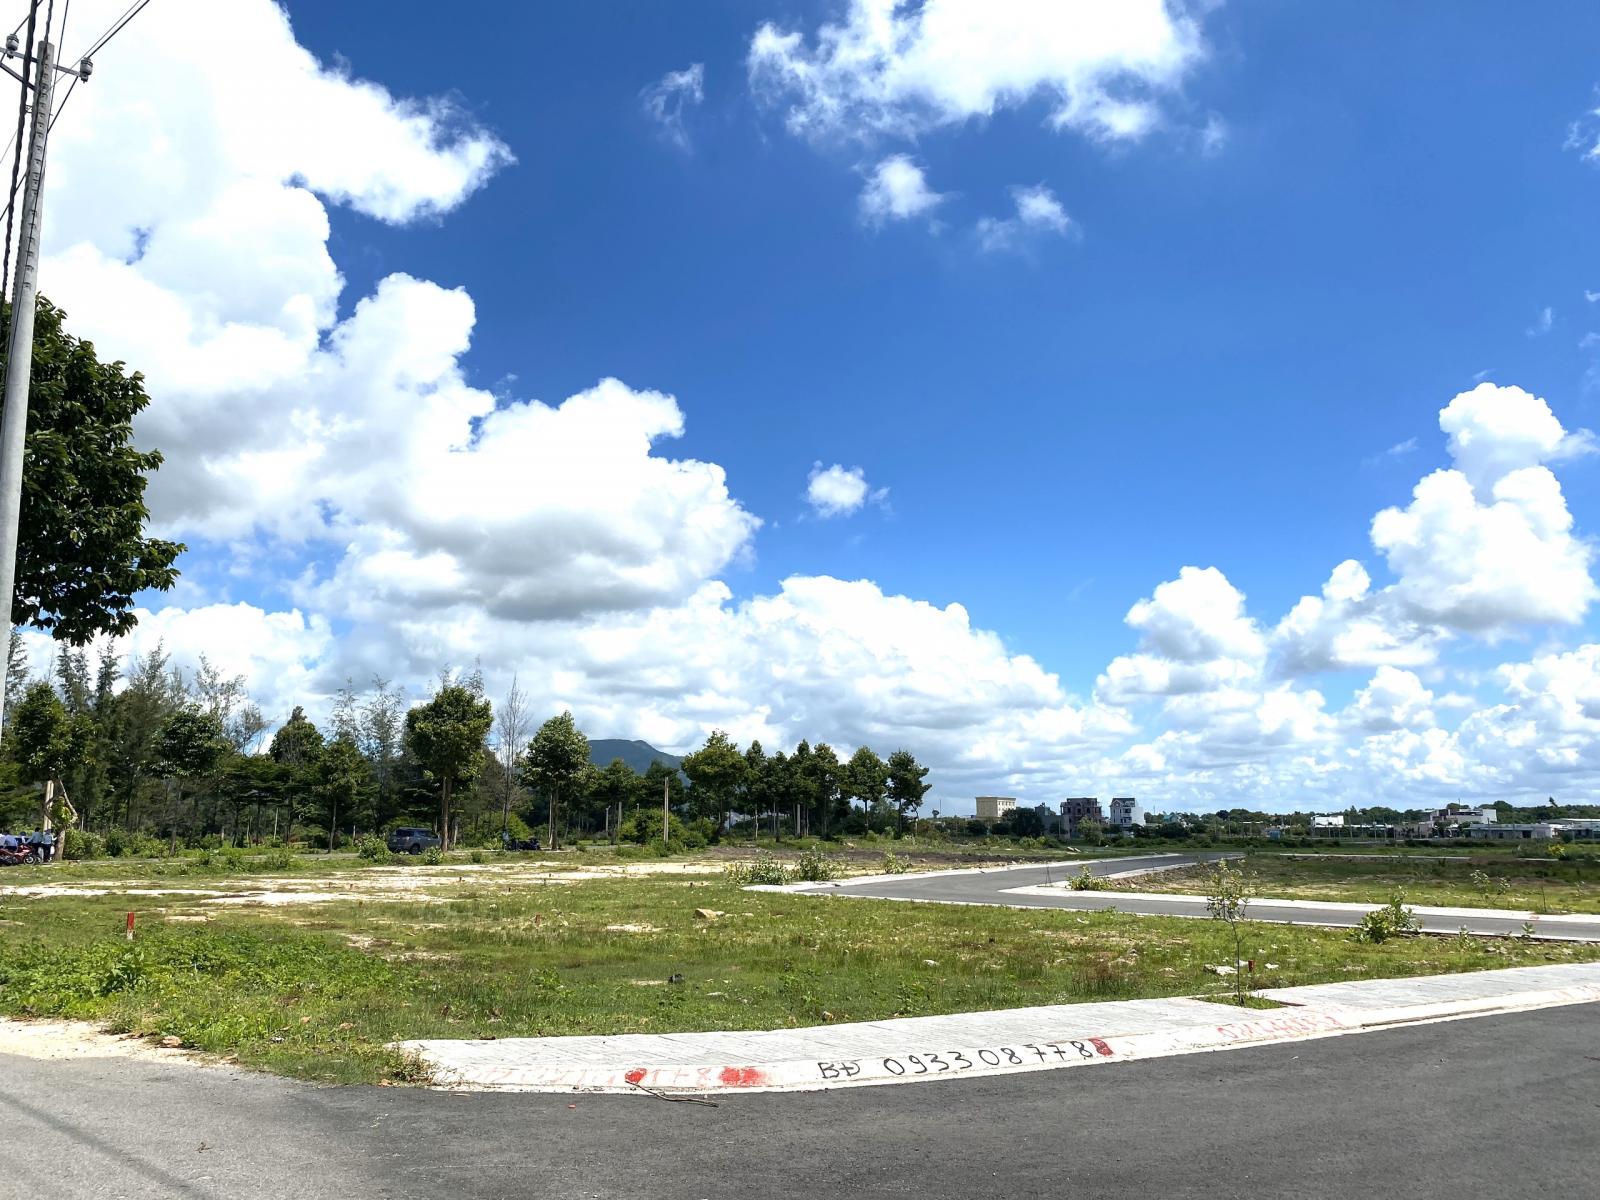 Đất nền Trung tâm mới thị xã Phú Mỹ, thổ cư, sổ hồng sẵn. Giá chỉ 3.2tr/m2. Lh:0888819699